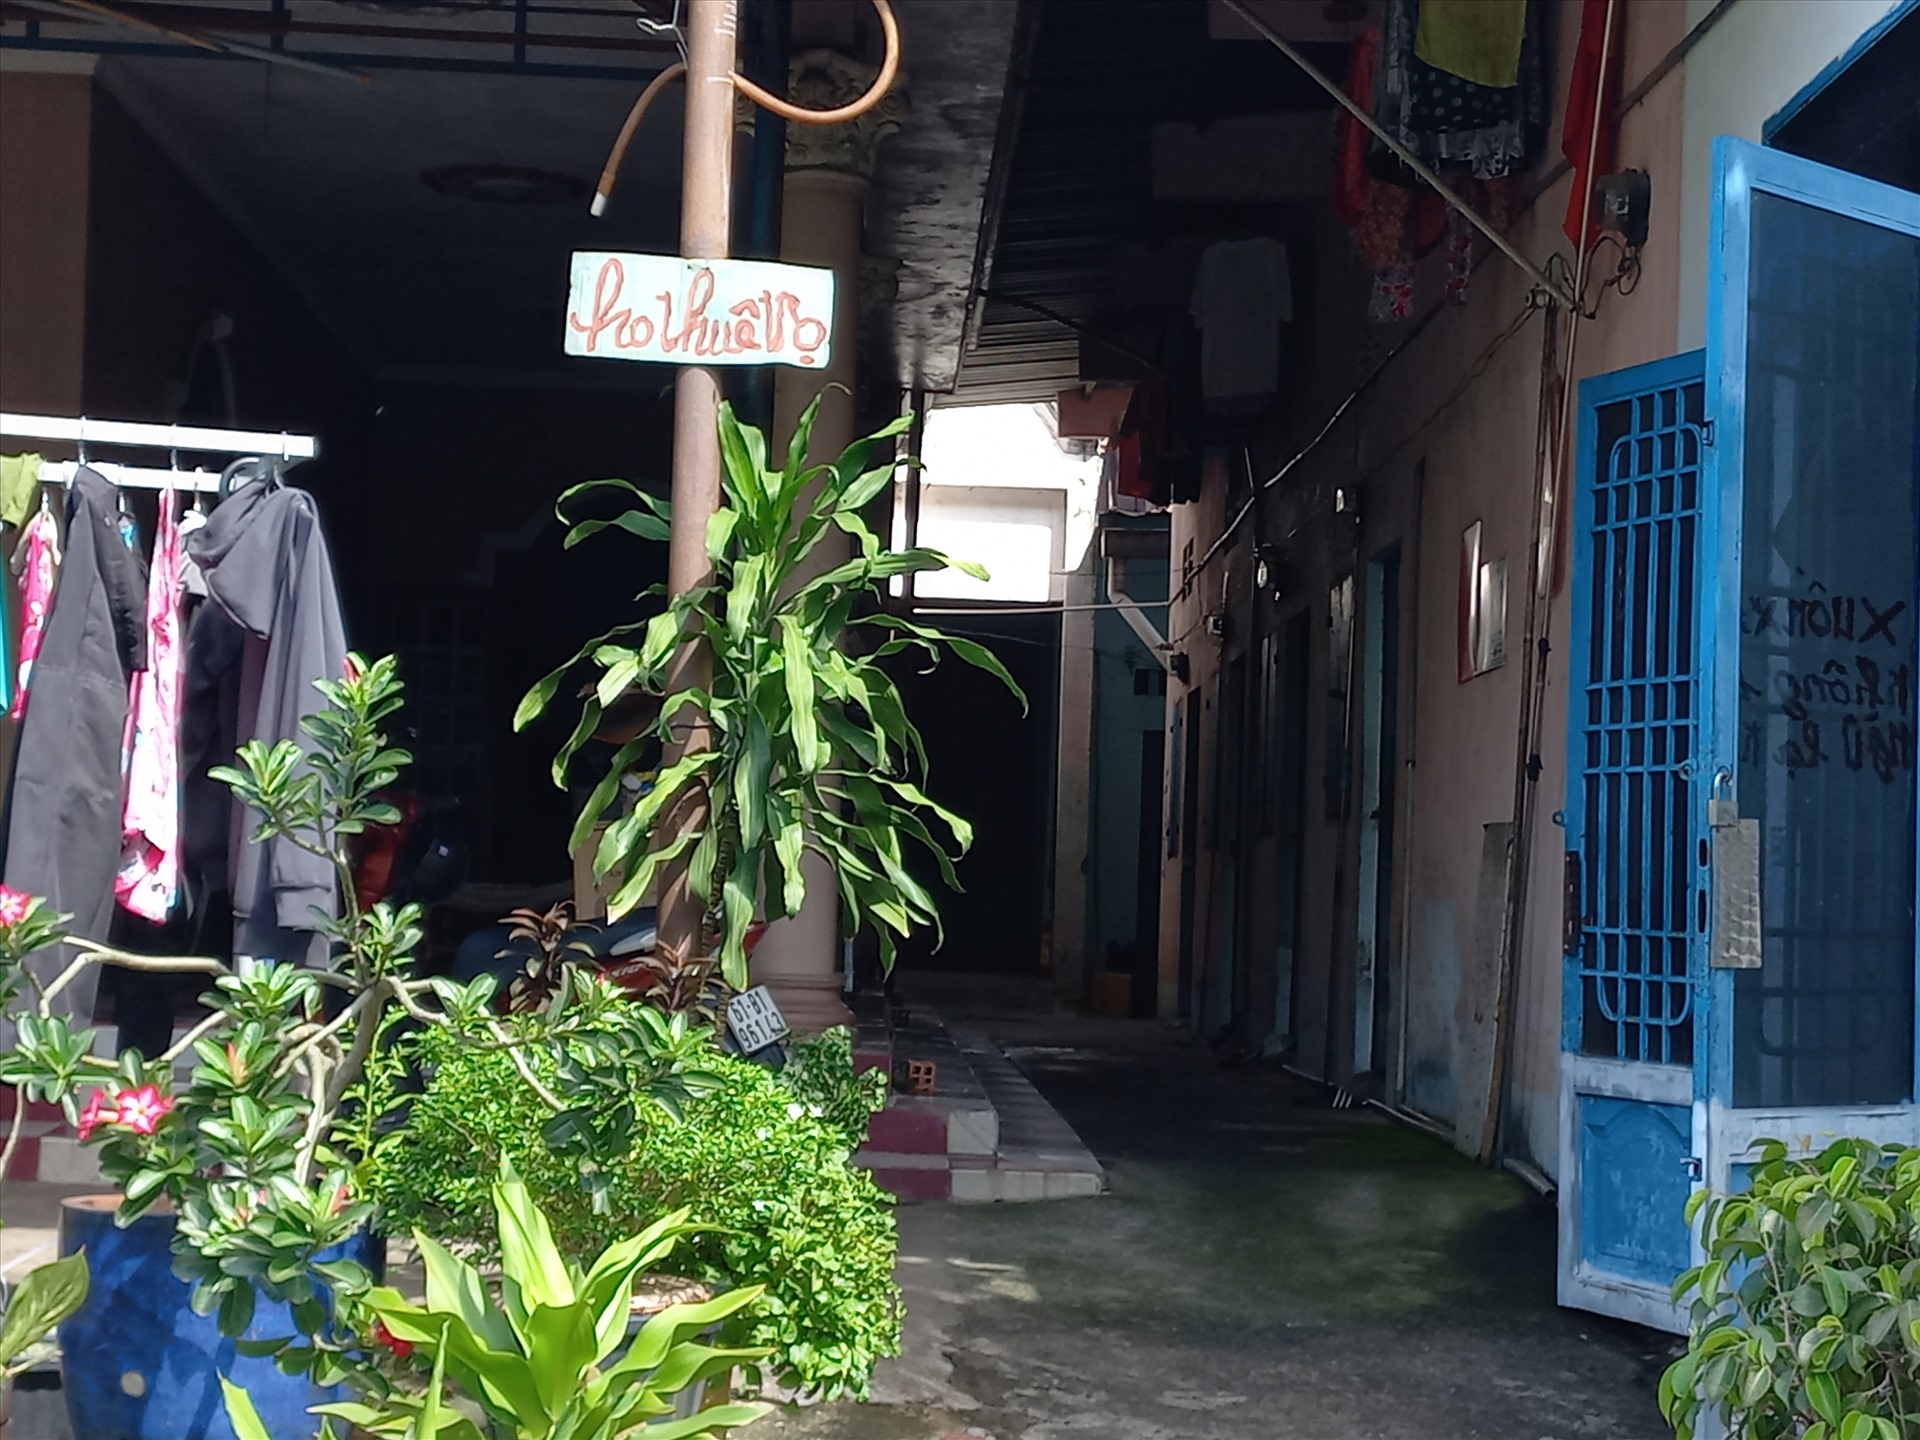 Ở thành phố Thủ Dầu Một, các nhà trọ bên cạnh khu công nghiệp Sóng Thần 3, Đại Đăng, Kim Huy cũng trống phòng nhiều hơn. Nhiều dãy trọ đặt bảng còn phòng cho thuê.